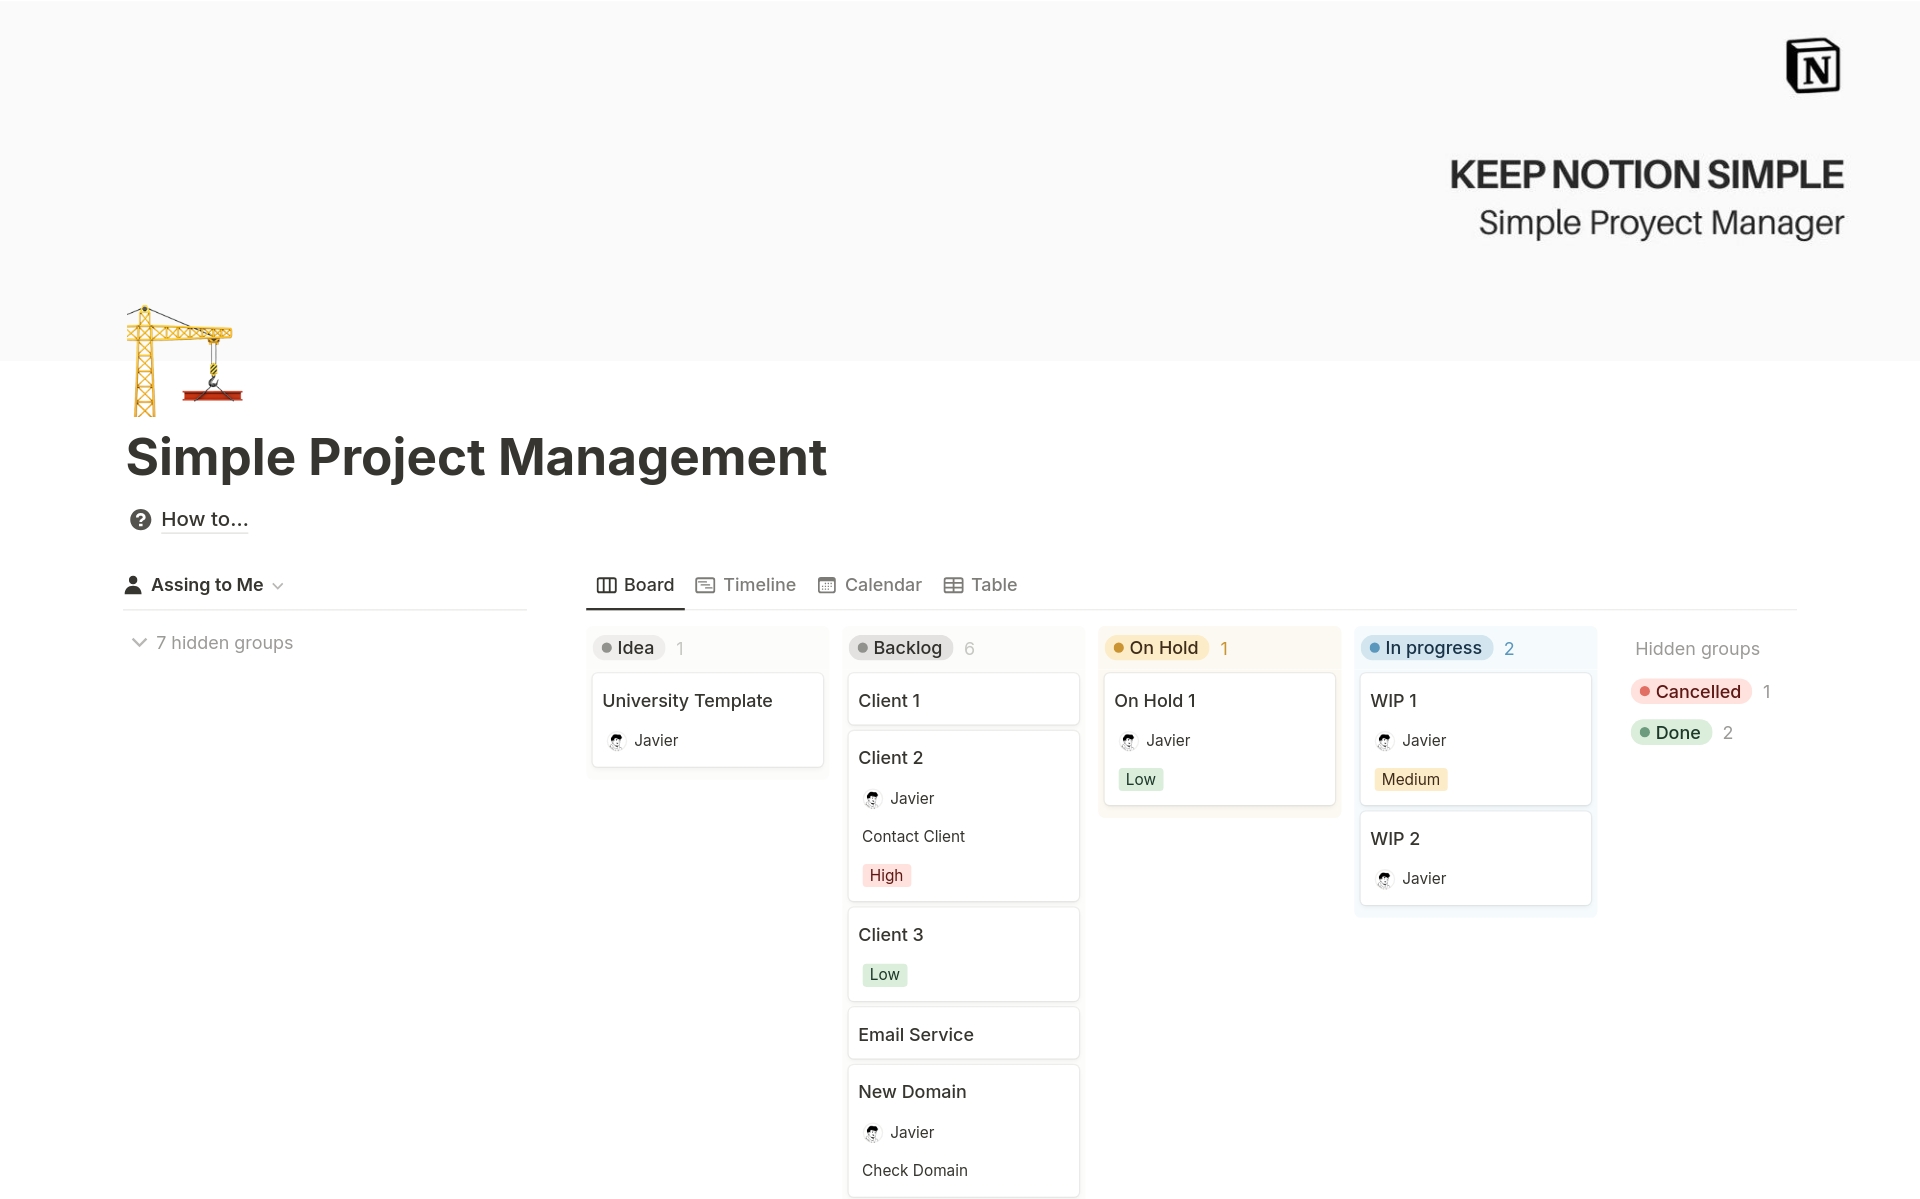 Vista previa de plantilla para KNS Simple Project Management